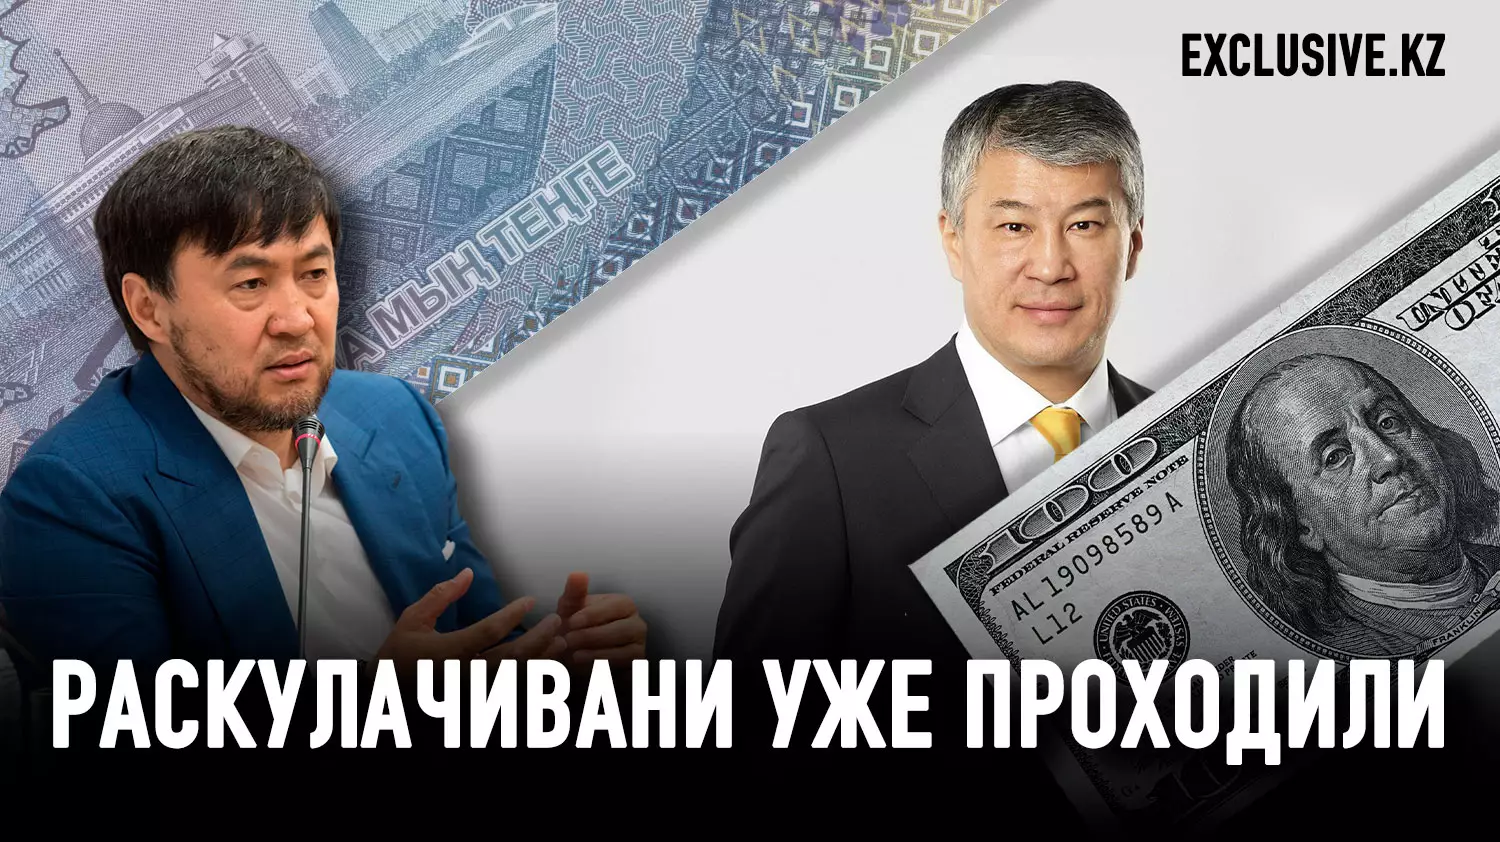 Казахстан 2:0: олигархи исчезнут, богатые останутся